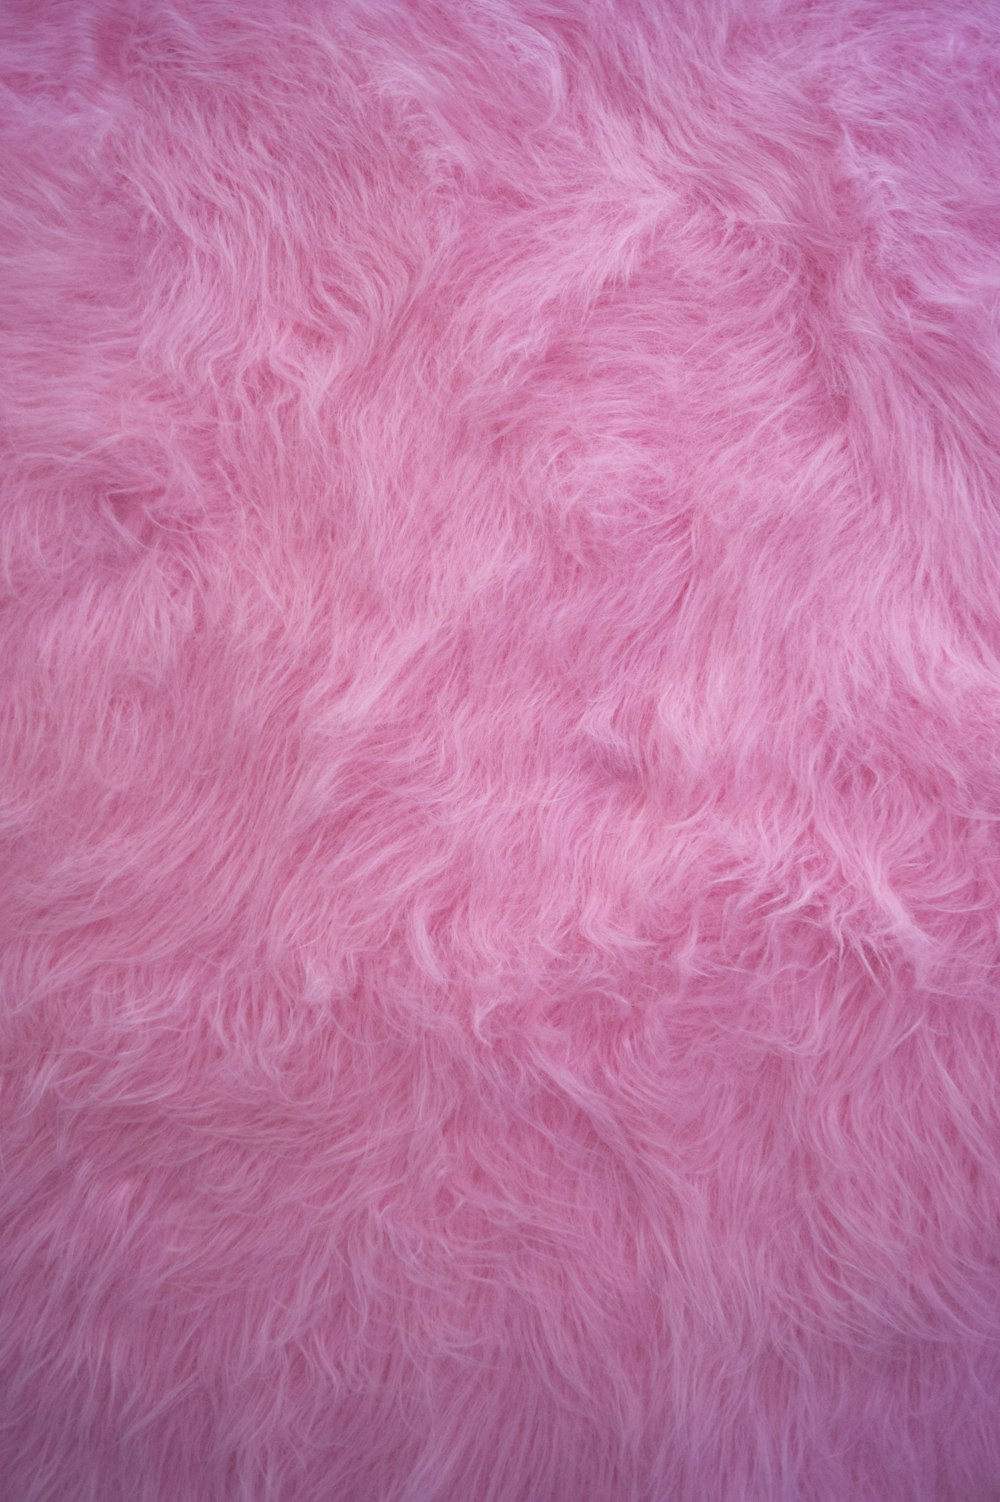 textil rosa en fotografía de primer plano